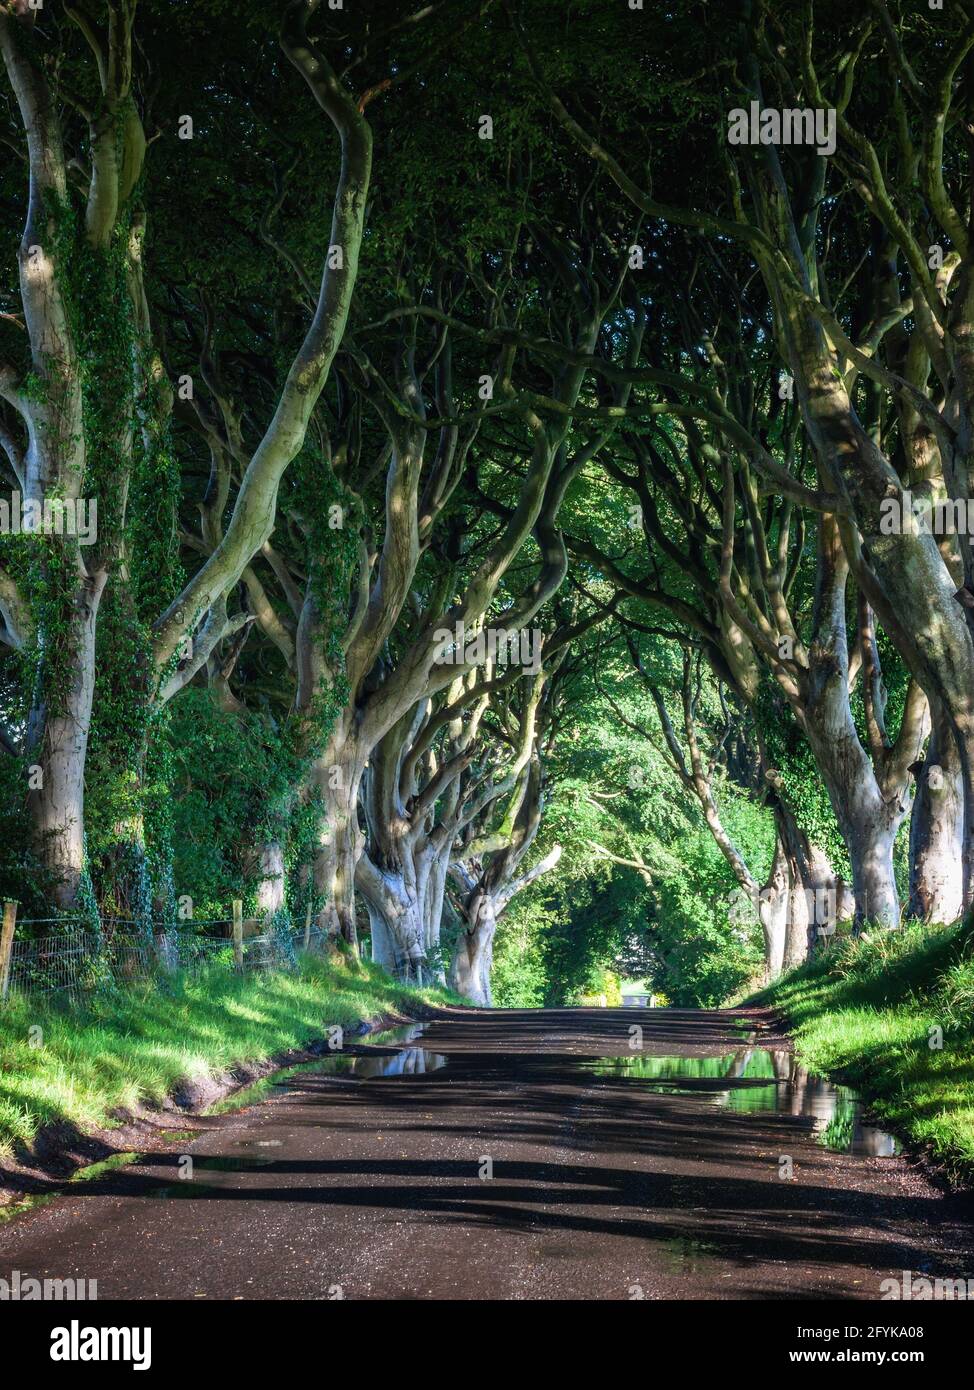 La strada fiancheggiata da alberi di faggio del XVIII secolo conosciuta come Dark Hedges nella contea di Antrim, Irlanda del Nord. Un luogo di ripresa per il Trono di Spade. Foto Stock